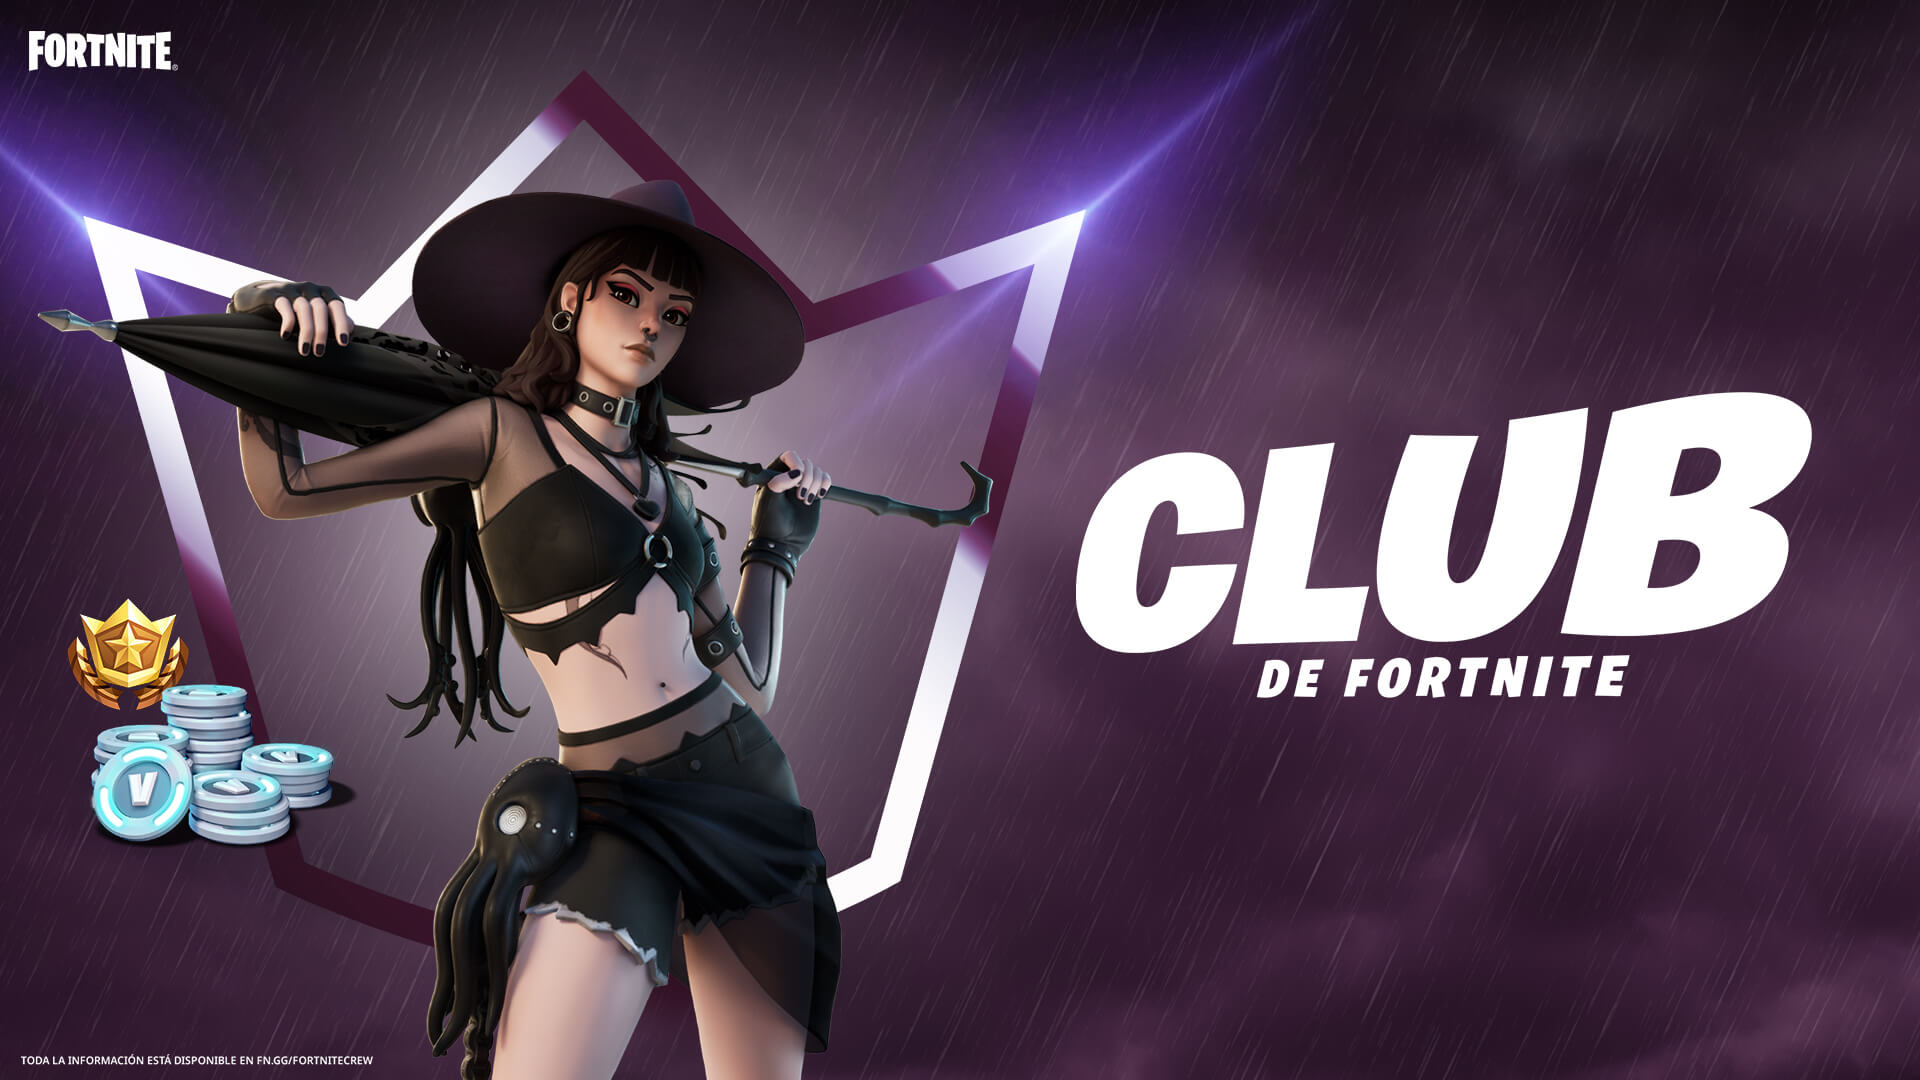 ‘Fedra’ es el nuevo atuendo del Club Fortnite correspondiente al mes de Julio